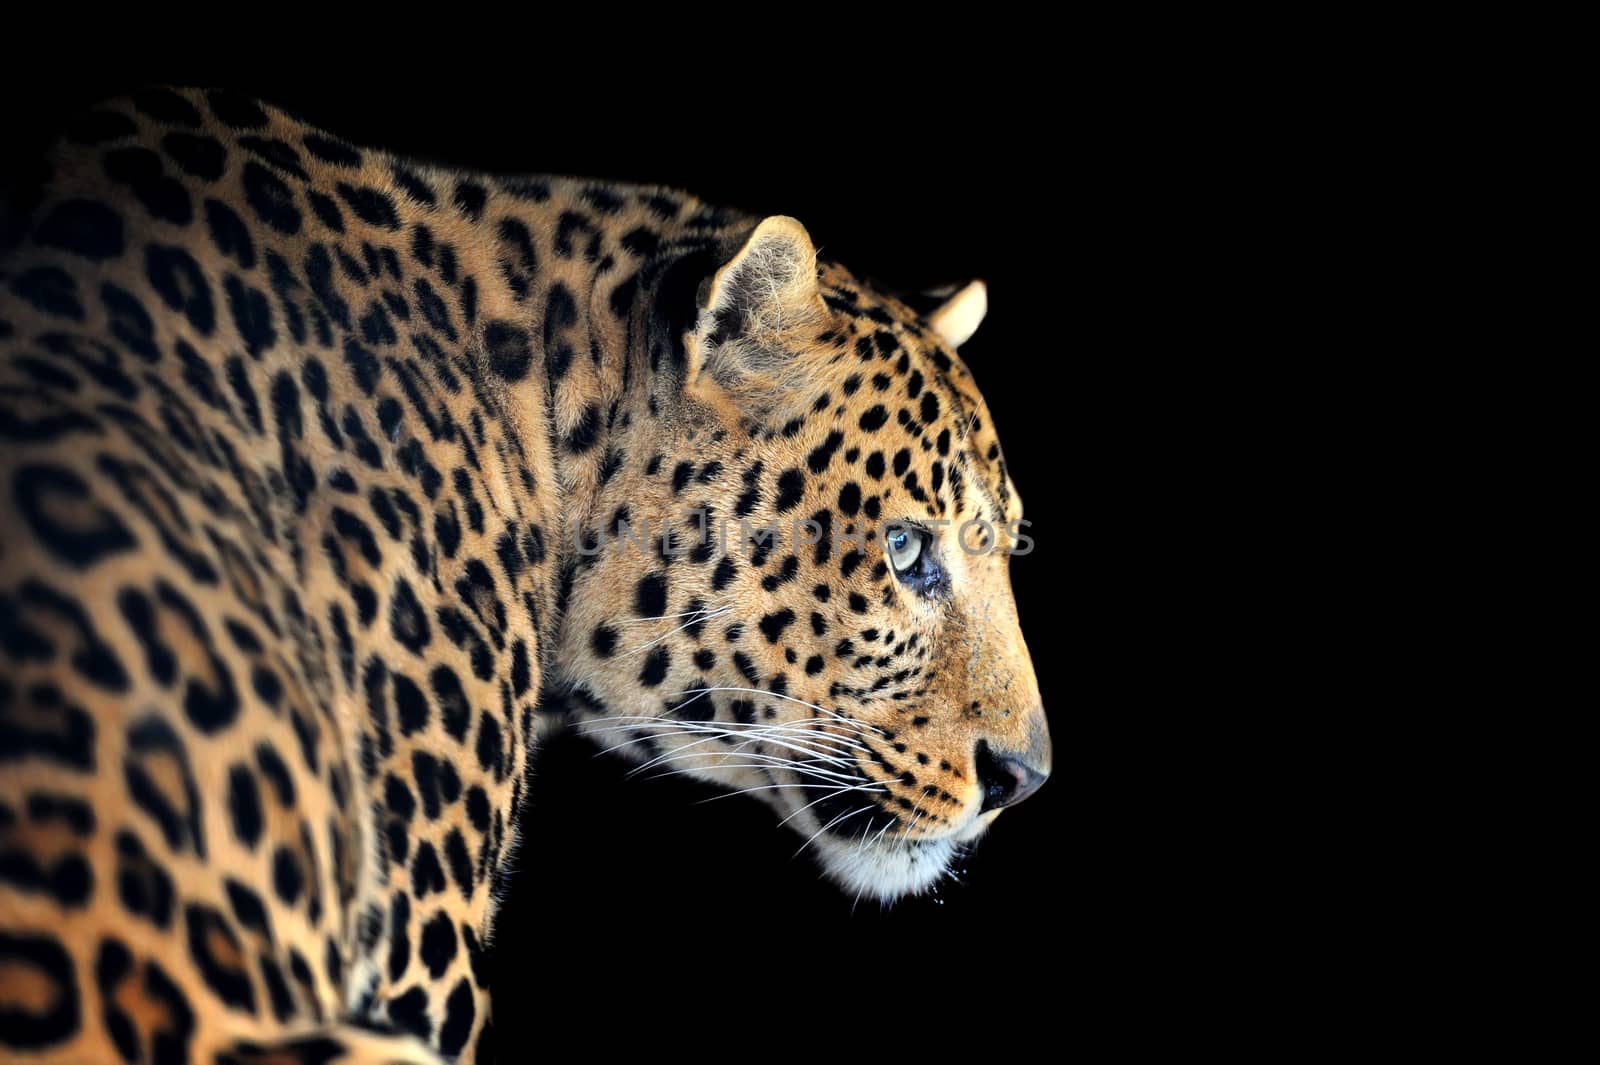 Leopard portrait on dark background by byrdyak